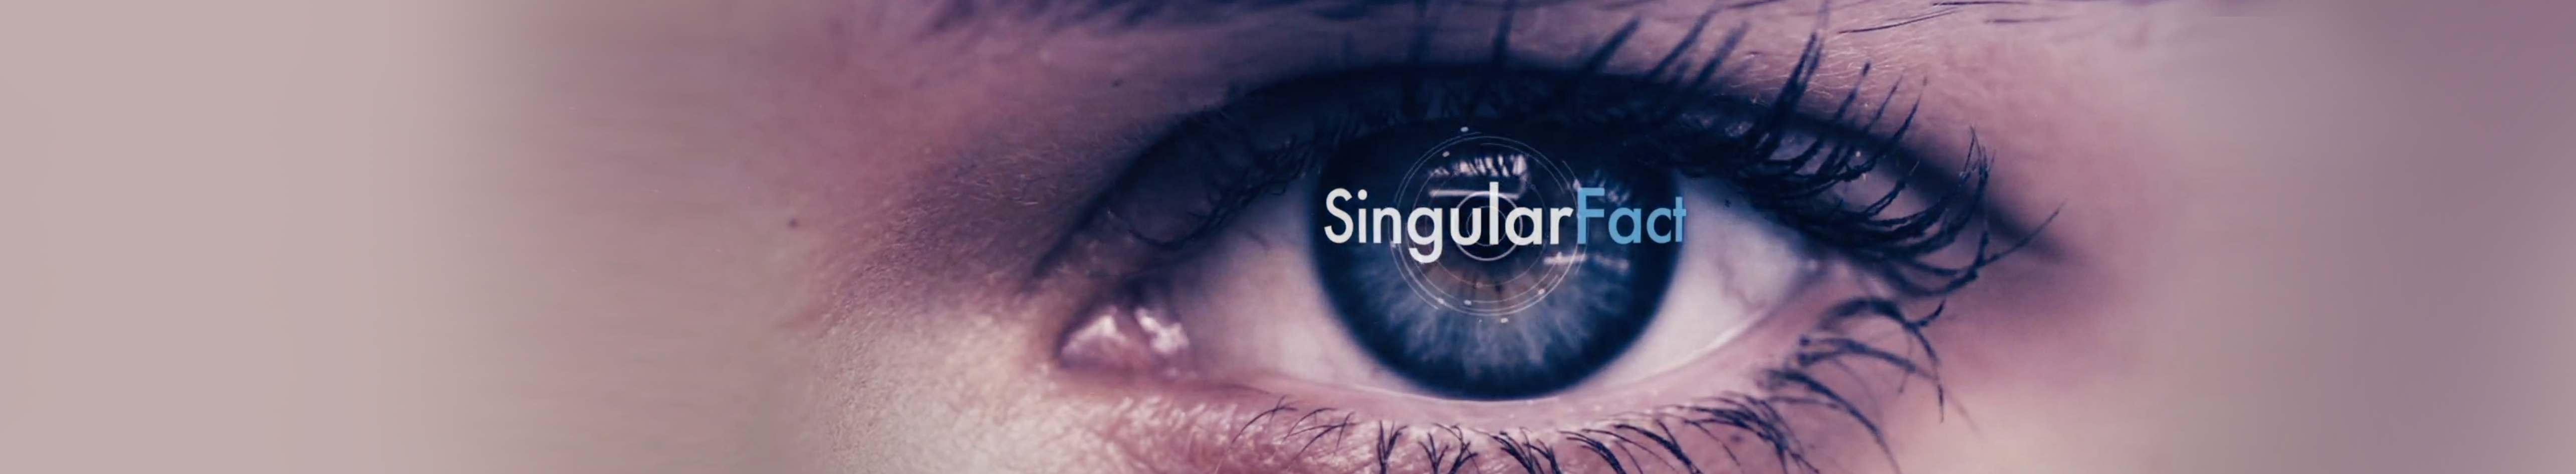 Singular Fact's profile banner